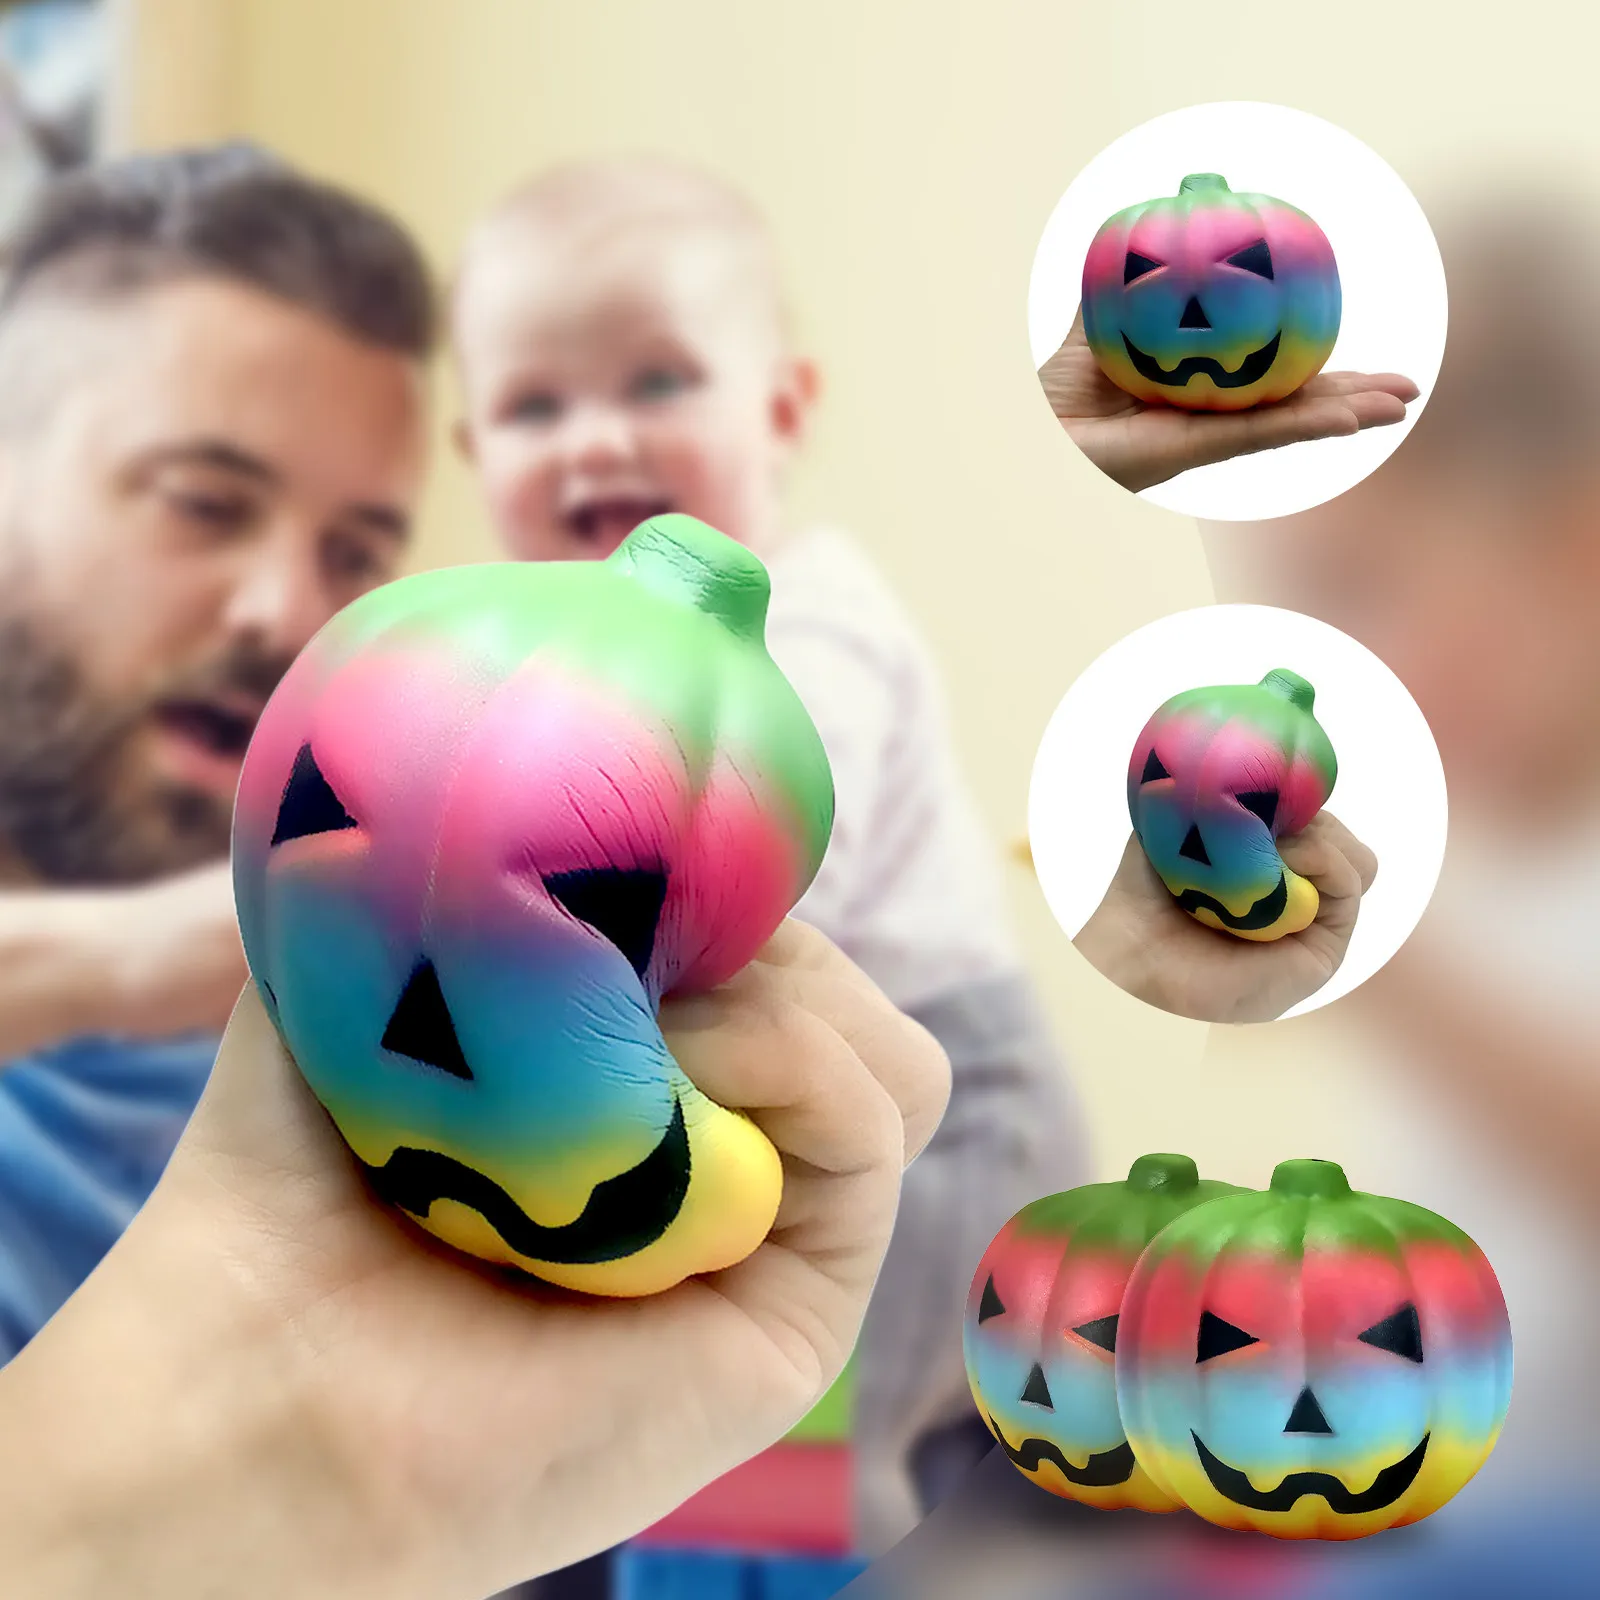 Ó Abóbora de Halloween Mochi Anti-Stress Brinquedos Crianças Adulto Sensory Squisity Slow Rising Anterior Antistress Relief Toy Presente de Feriado